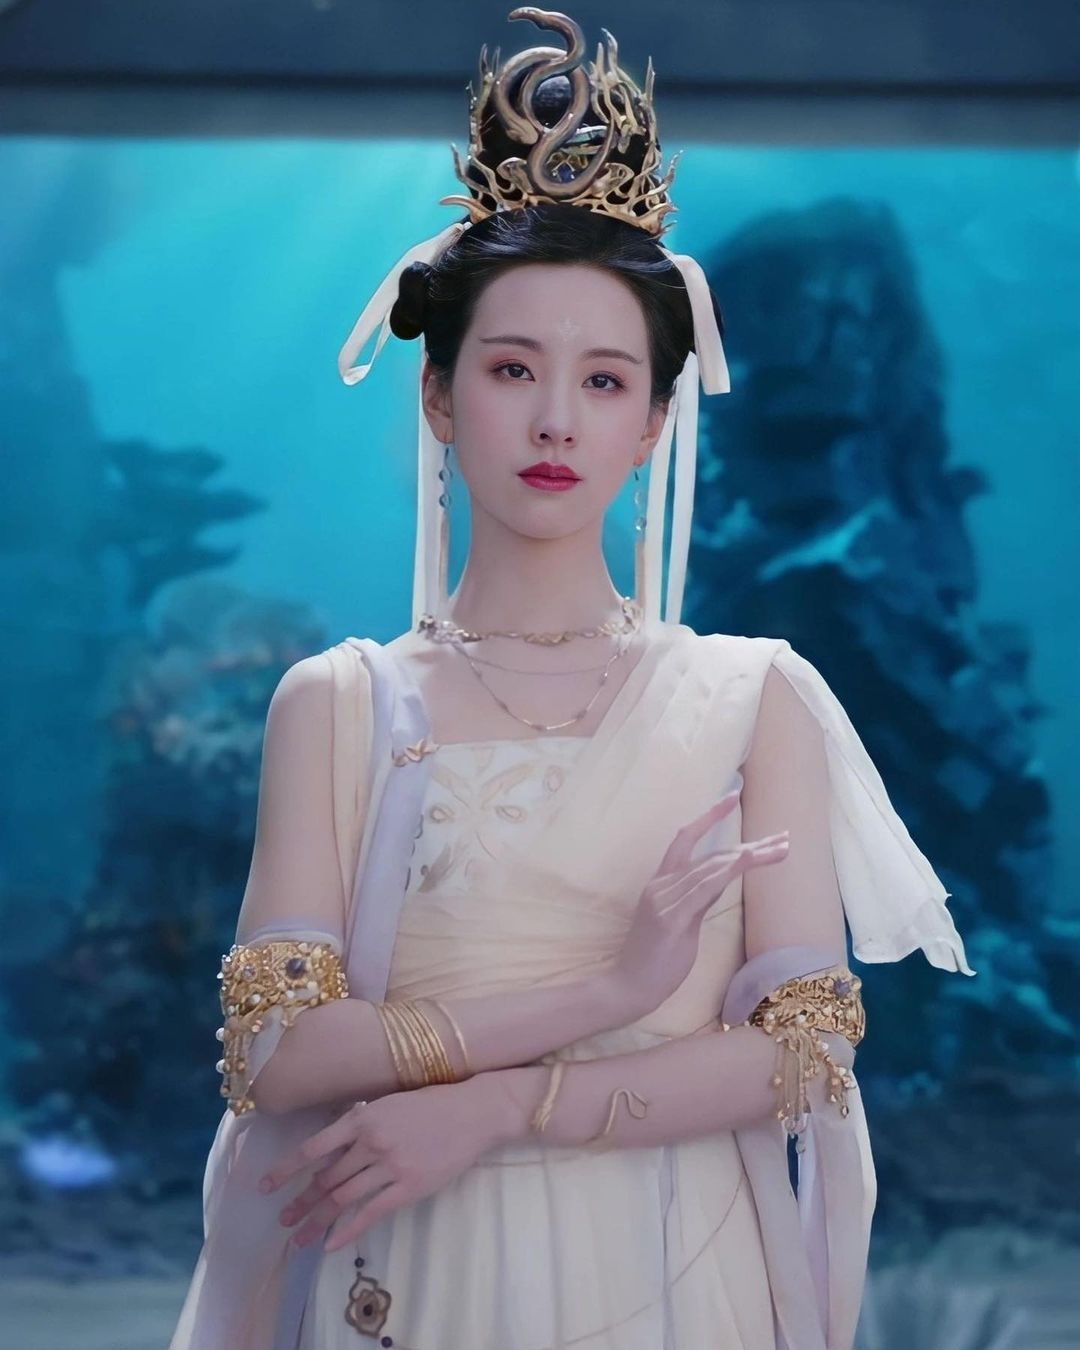 'Nữ thần cameo' Trần Đô Linh bị chê nhan sắc nhạt nhòa trong tạo hình nữ chính của Đại Mộng Quy Ly - Ảnh 1